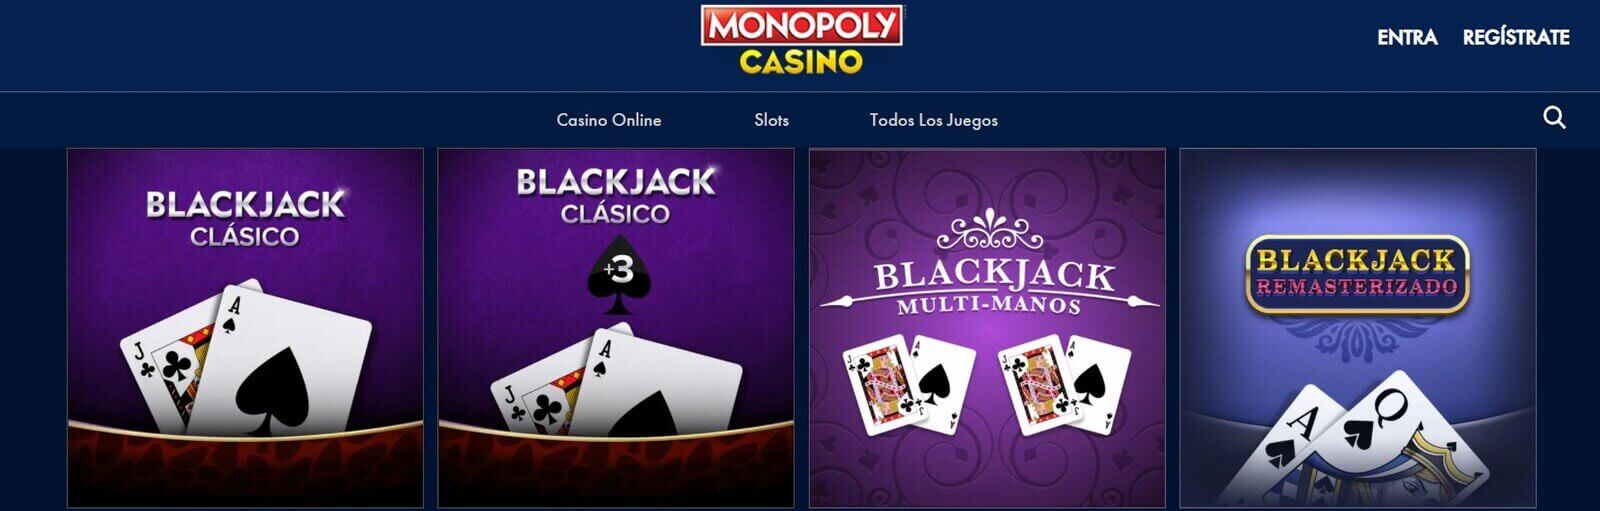 Juegos en Monopoly Casino